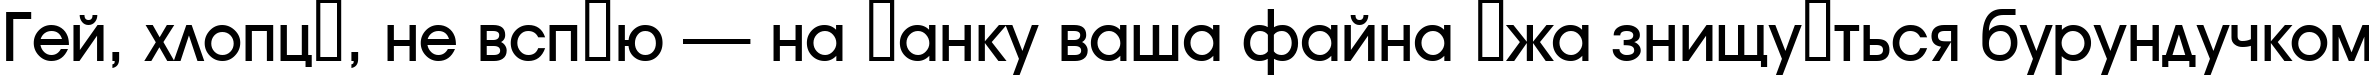 Пример написания шрифтом a_AvanteTck Medium текста на украинском